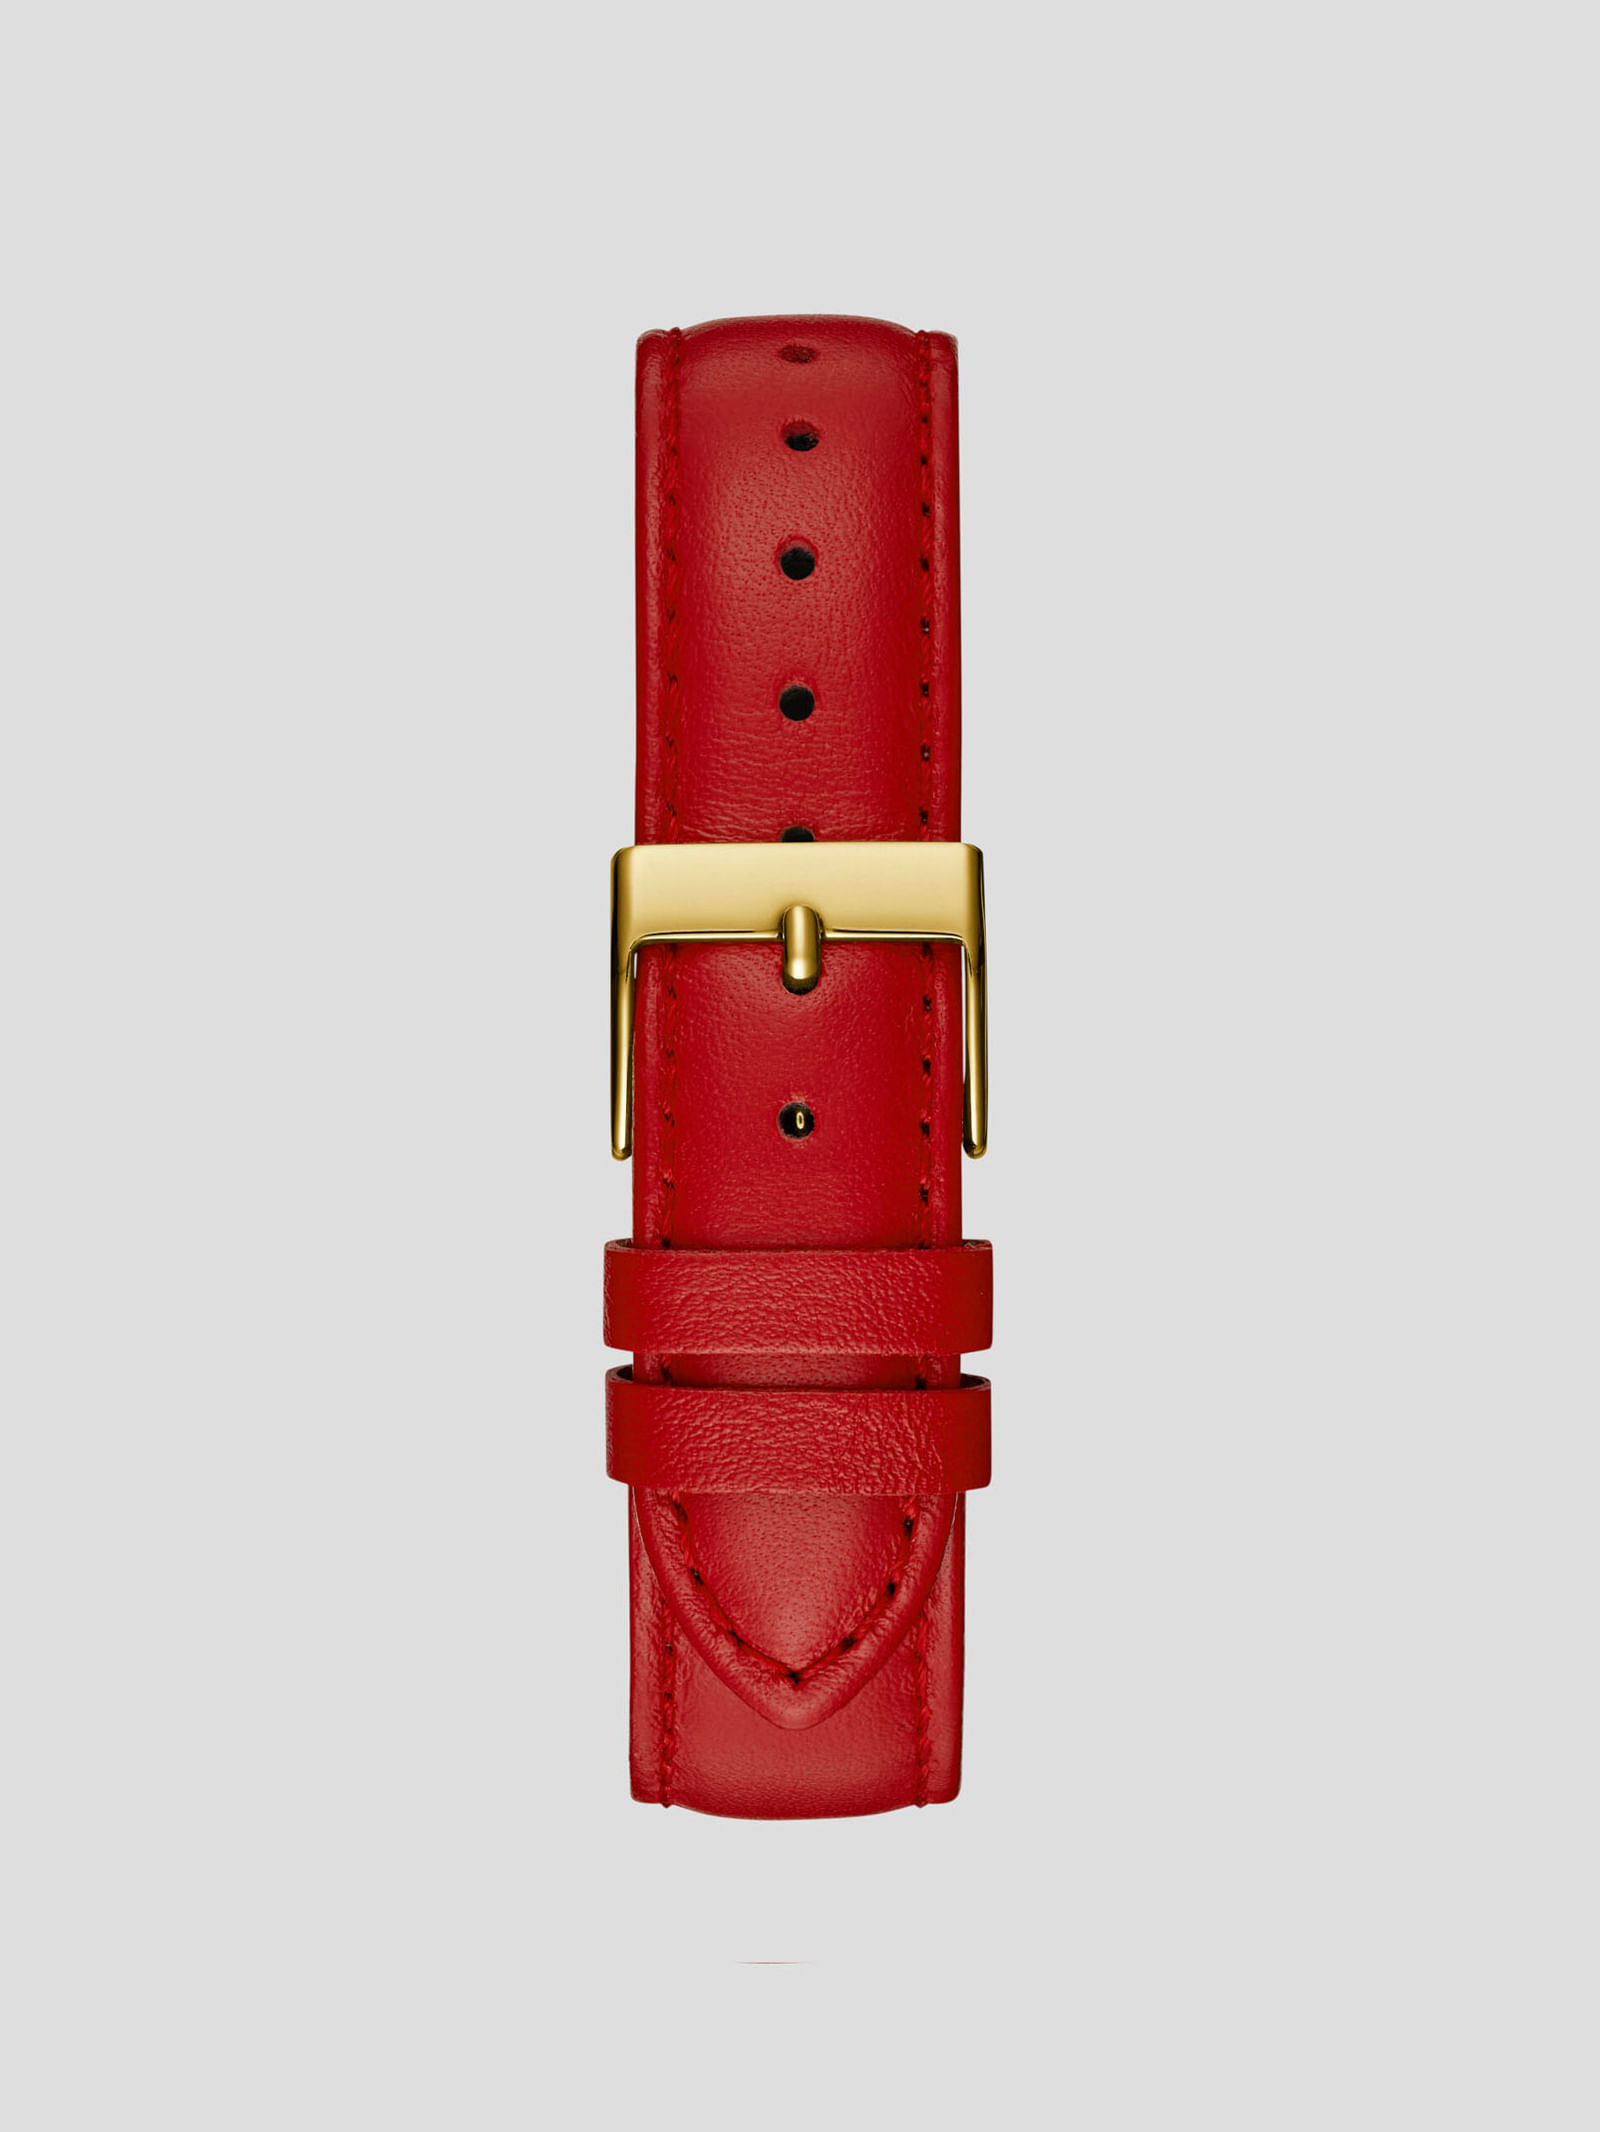 Red Perfume: Reloj Mujer Guess W1141L1 (Ø 36 Mm)